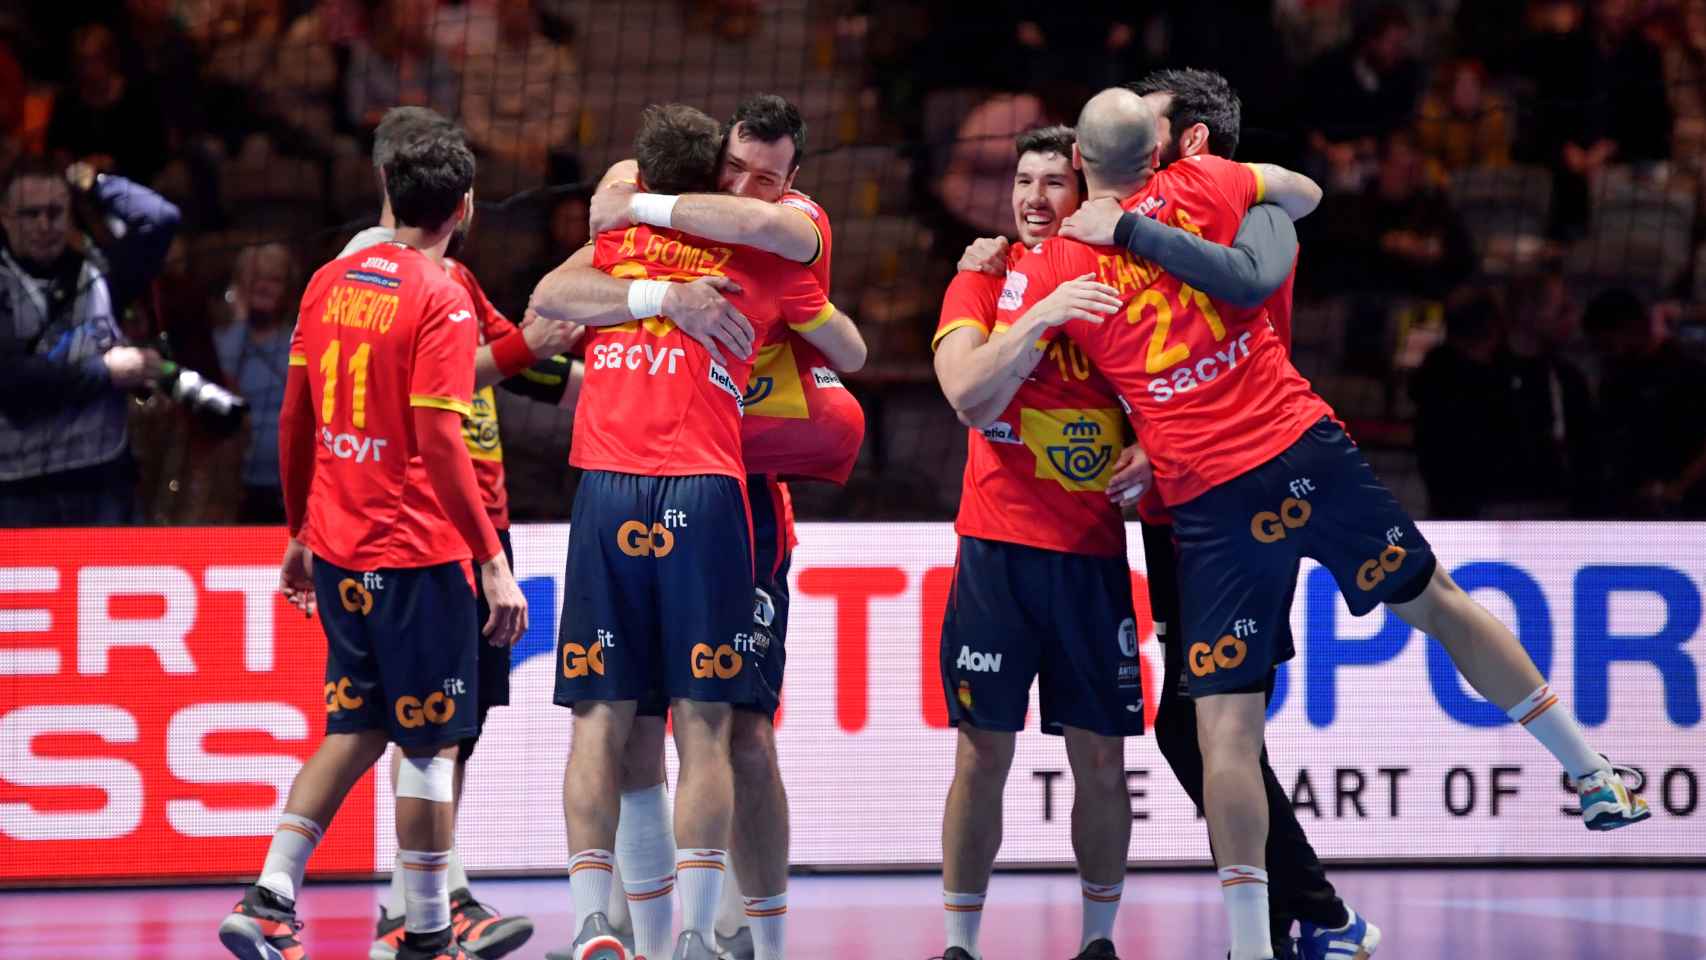 La selección española de balonmano celebra el Europeo 2020